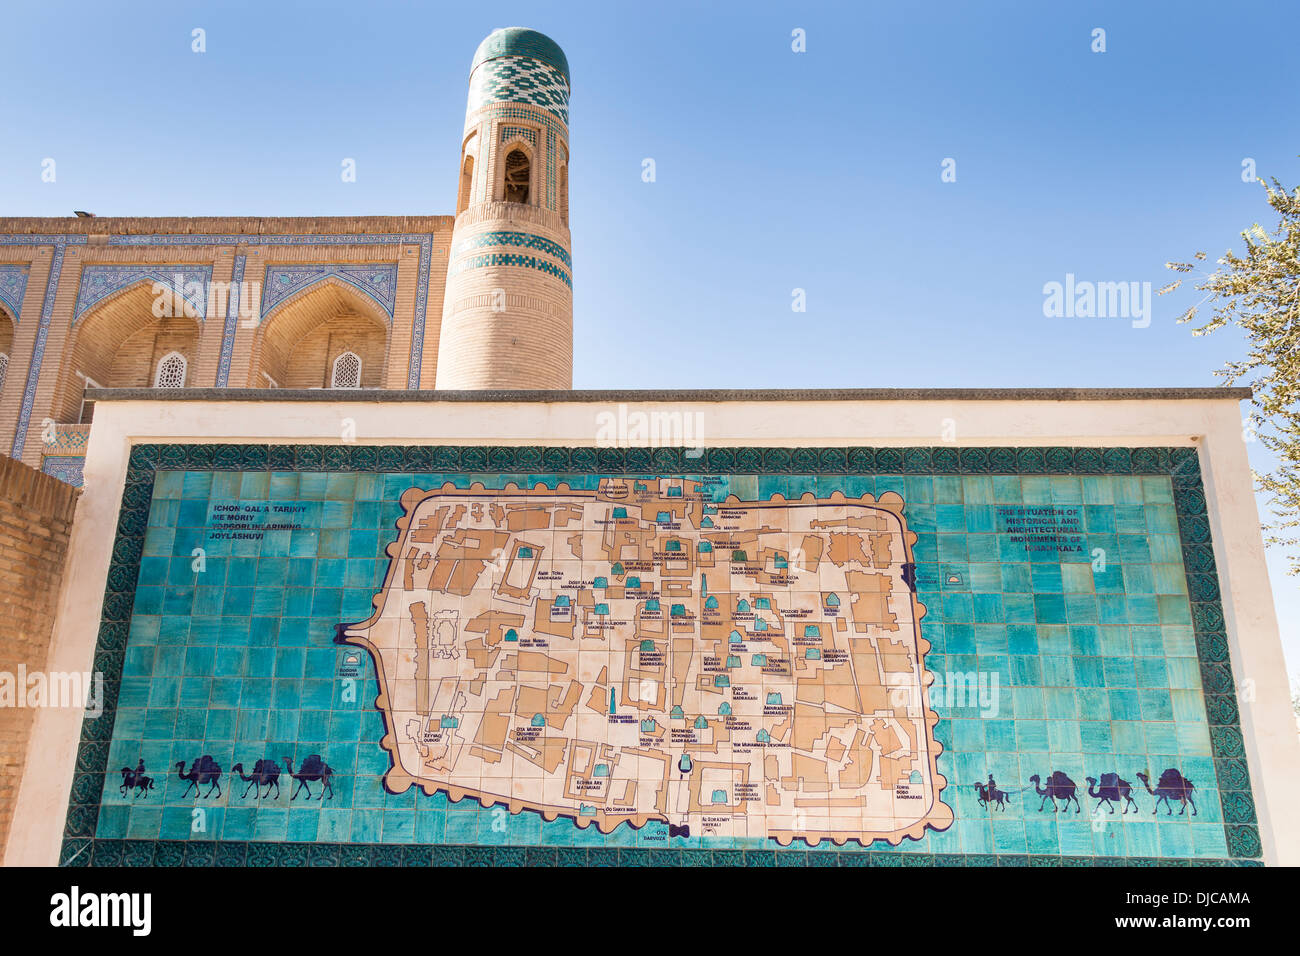 Sol carrelé site de Khiva, Orient Star Hotel, anciennement Mohammed Amin Khan Madrasah, derrière, l'Ichan Kala, Khiva, Ouzbékistan Banque D'Images